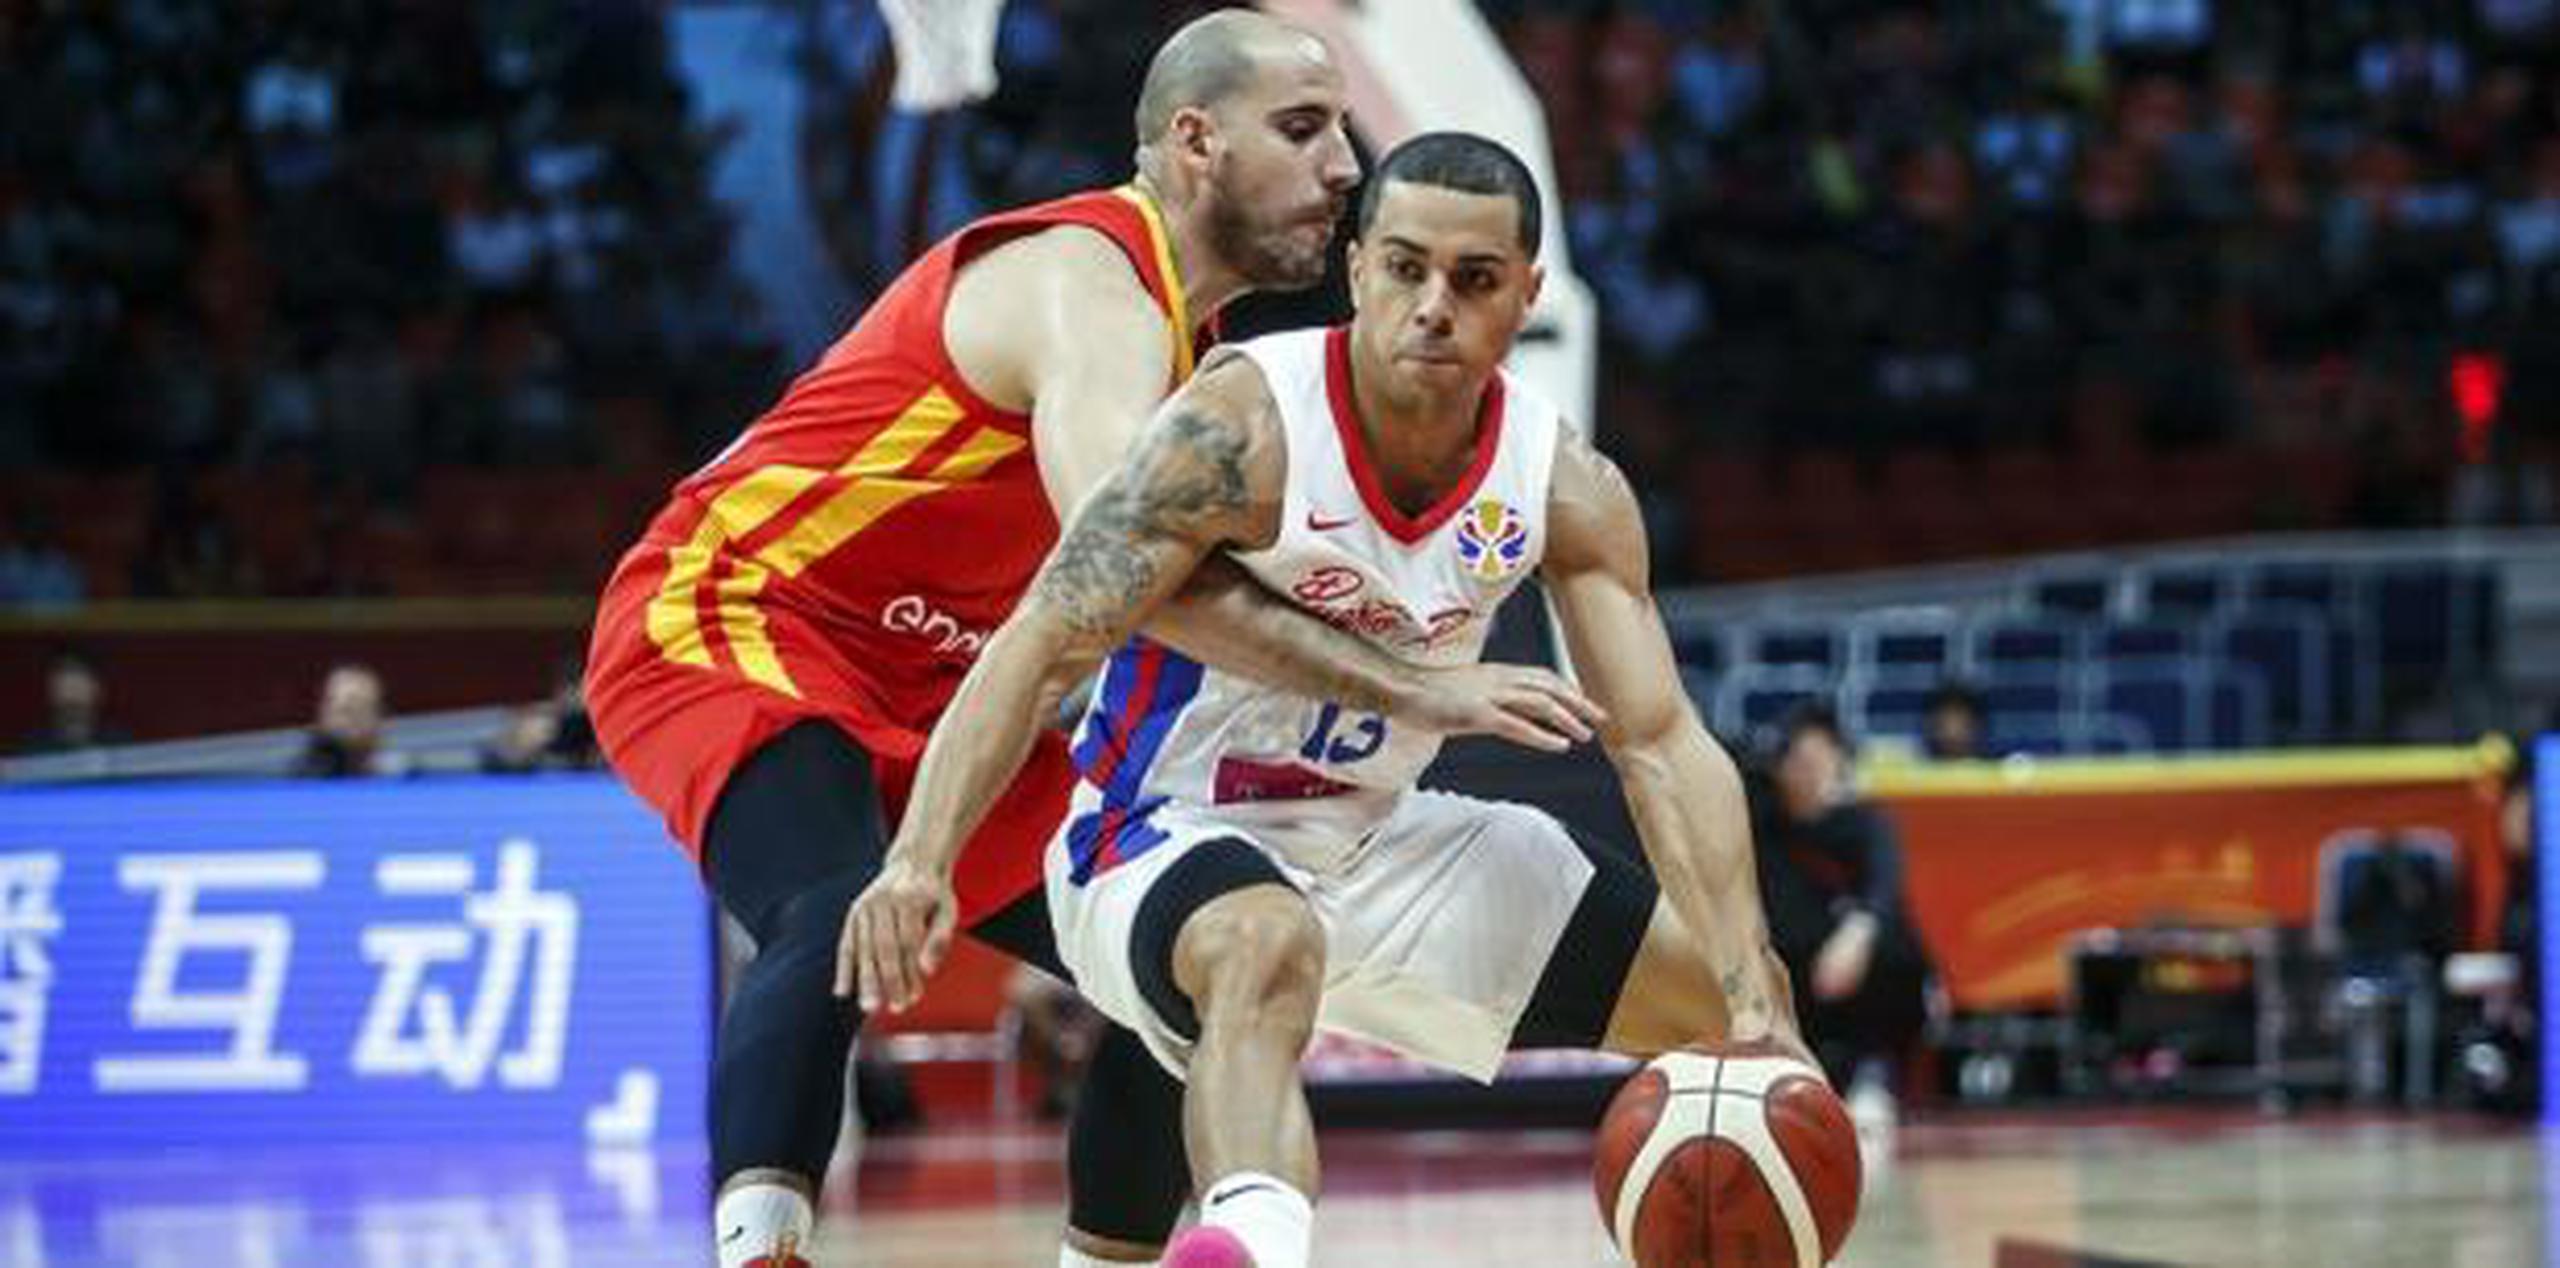 Ante Túnez mañana, Puerto Rico se juega la vida con respecto a estar entre los mejores 16 equipos del torneo. En la foto, Angelito Rodríguez busca evadir su defensa. (FIBA)